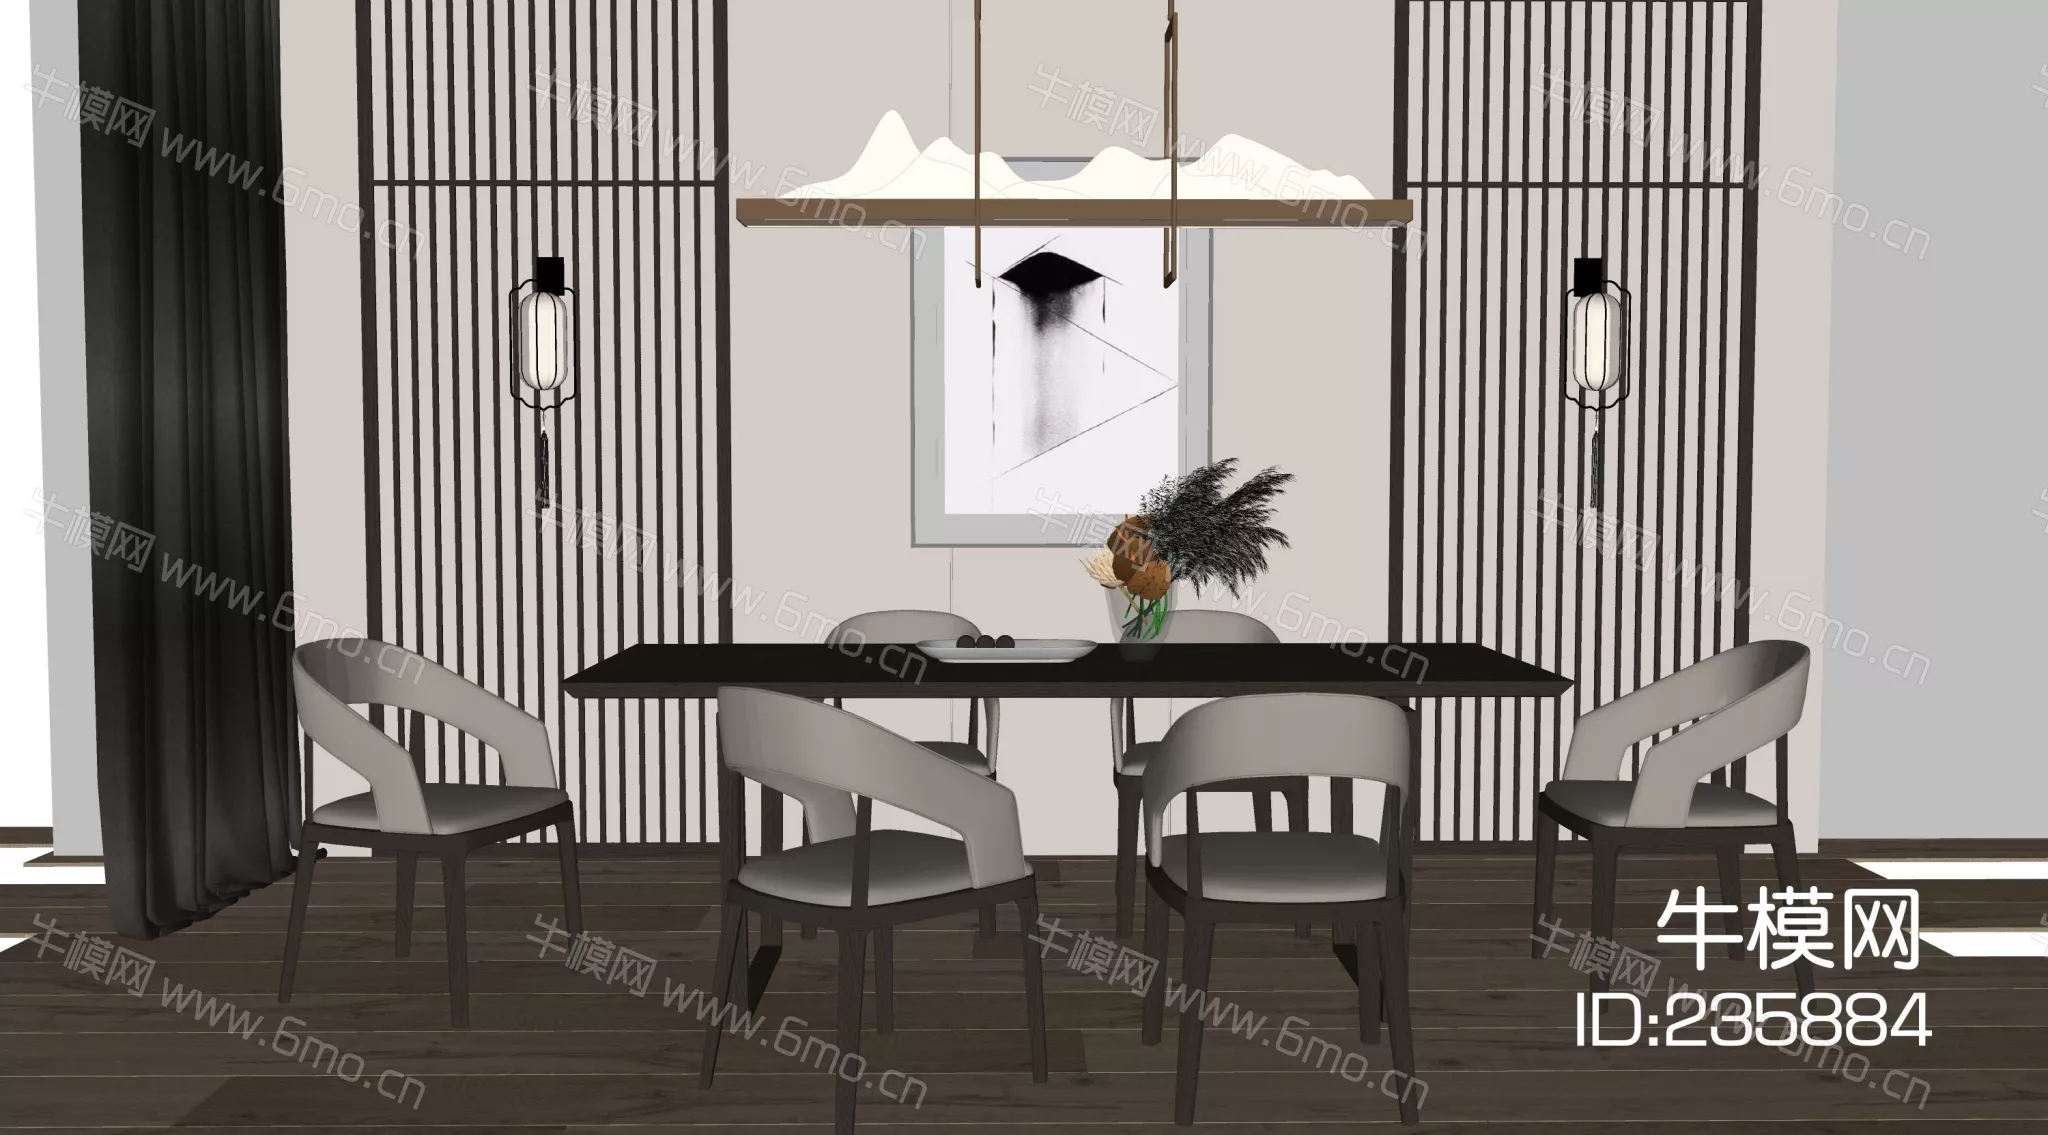 MODERN DINING TABLE SET - SKETCHUP 3D MODEL - ENSCAPE - 235884